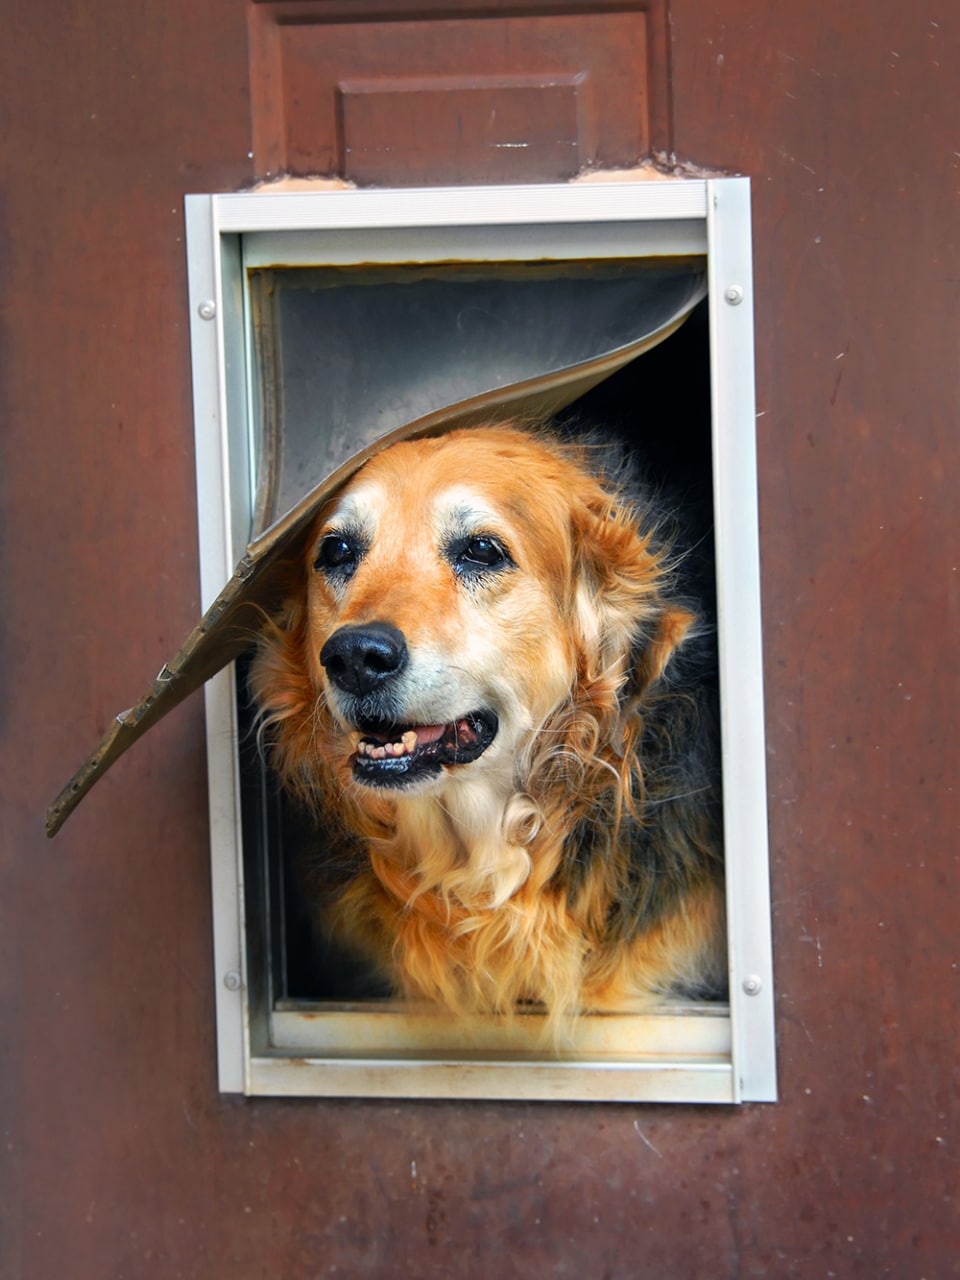 Домик для большой собаки из дерева: для улицы или дачи